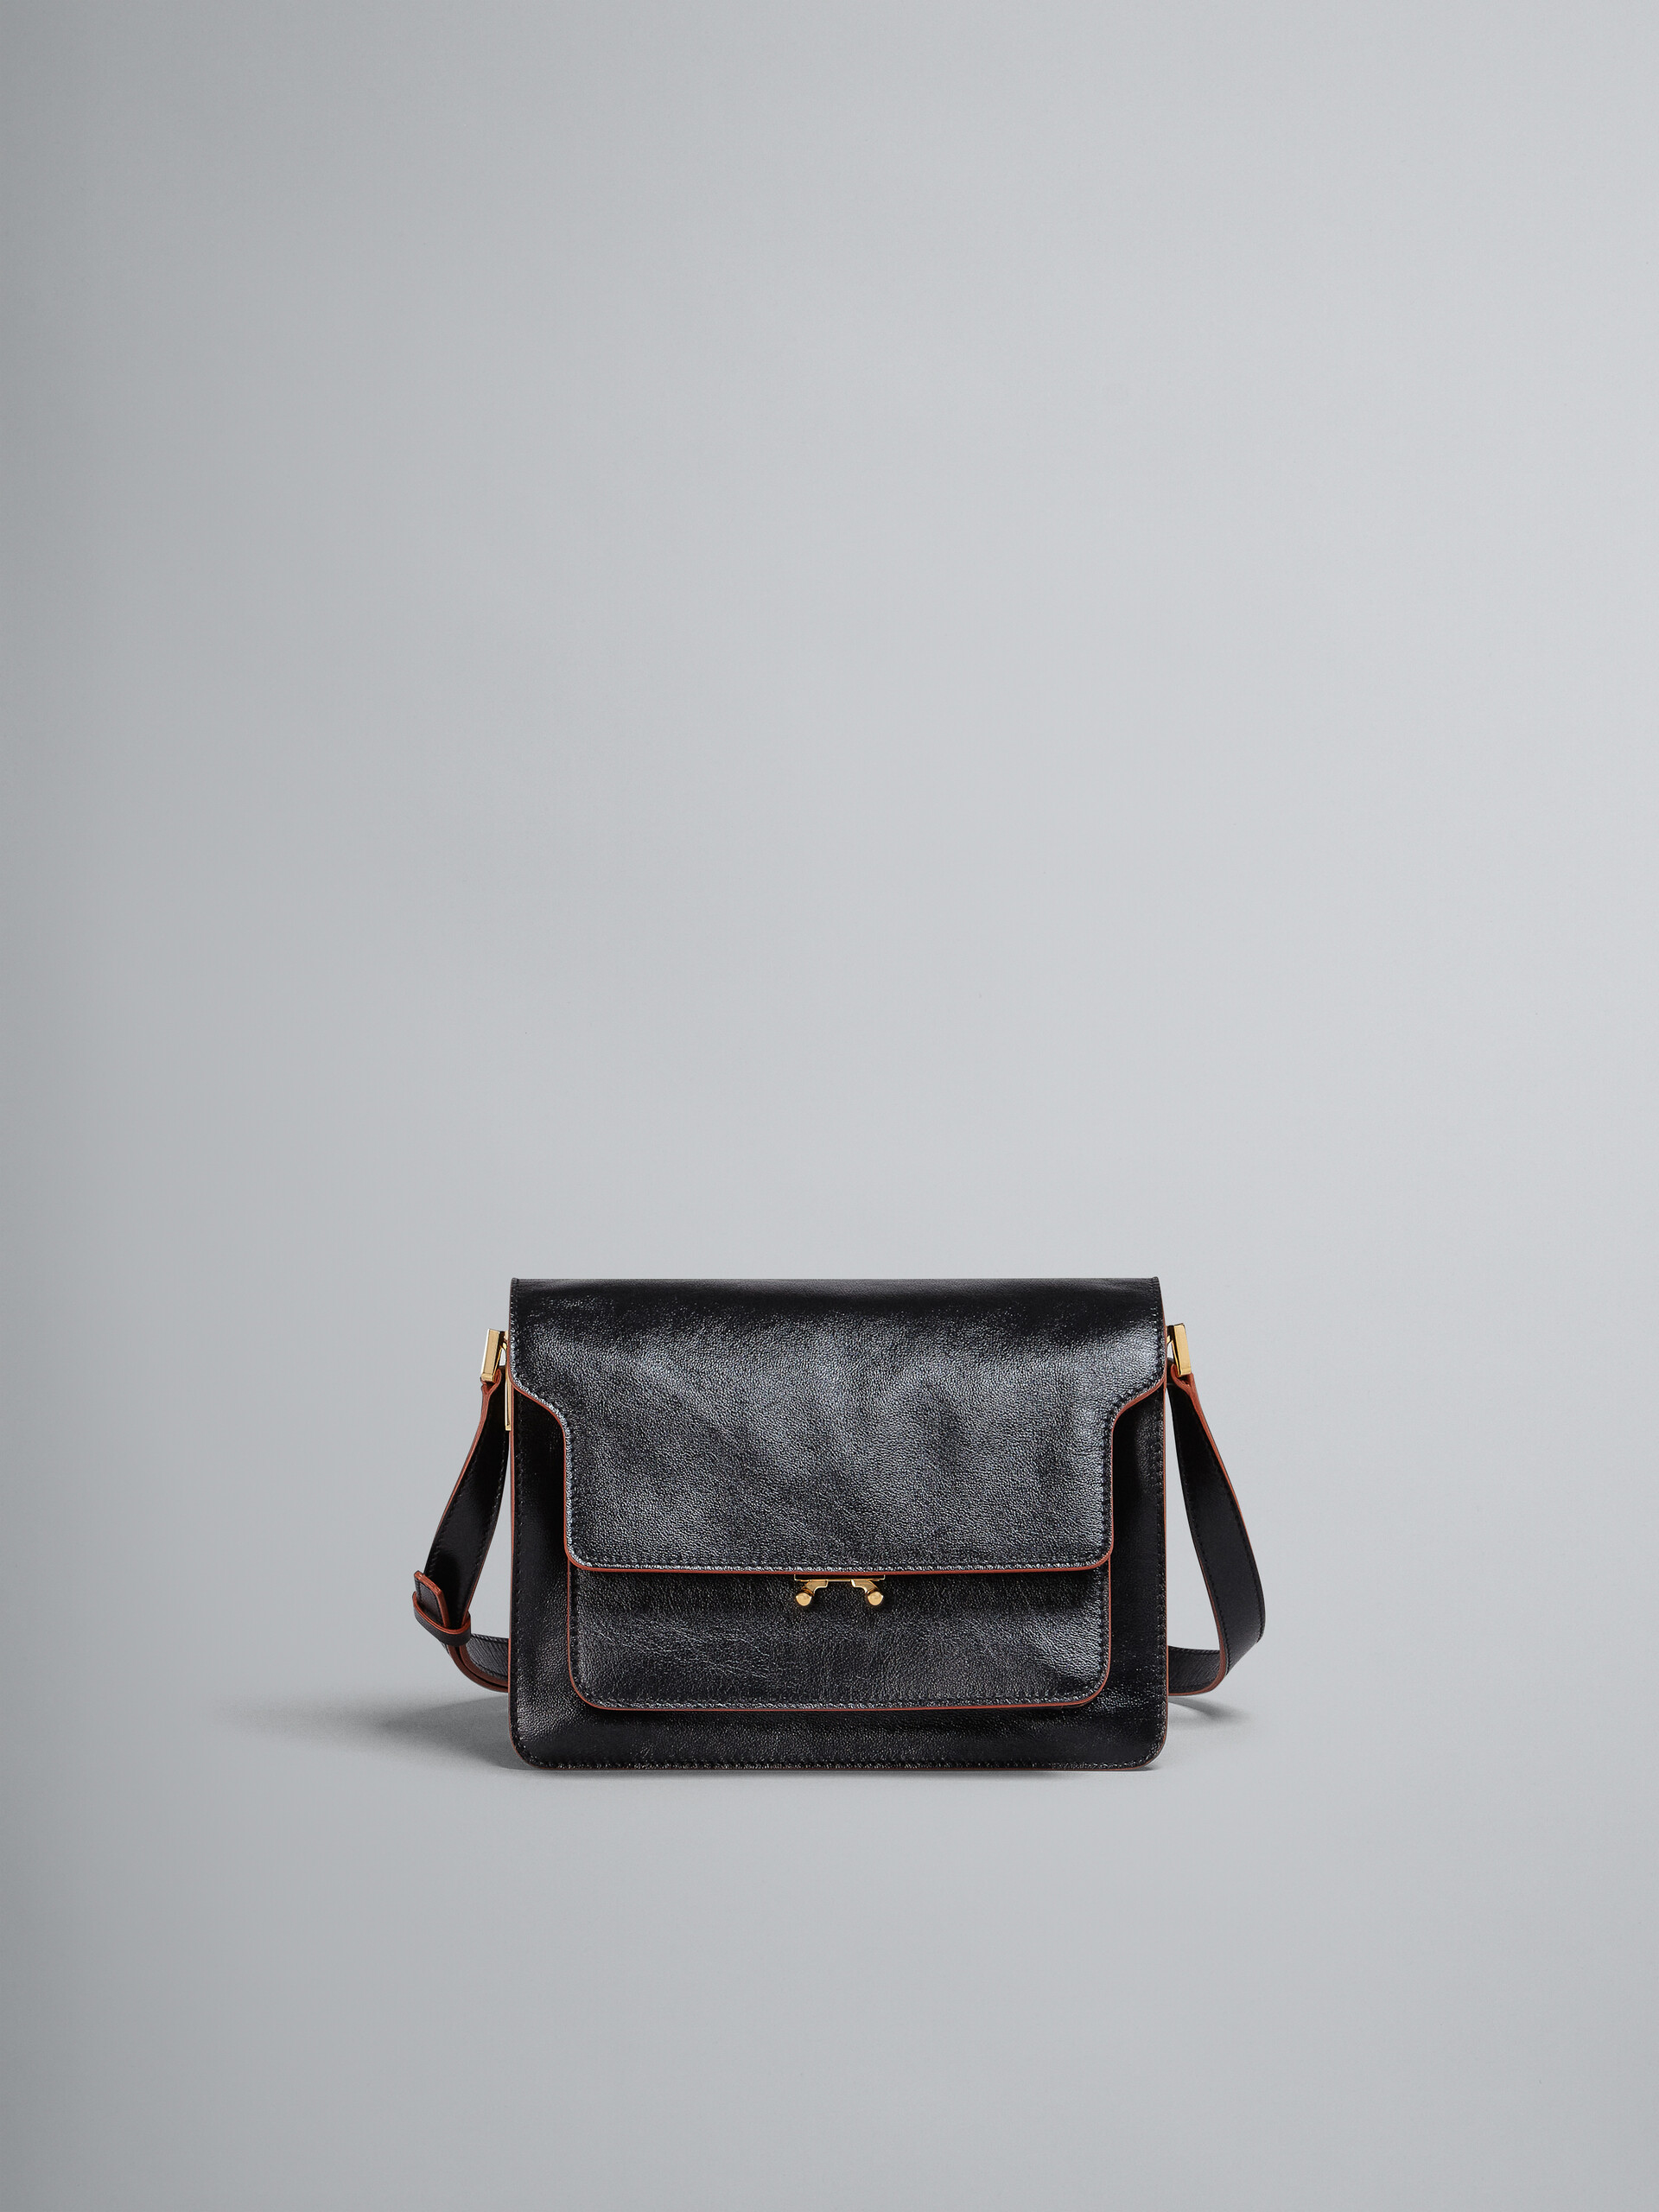 TRUNK SOFT medium bag in black leather - Shoulder Bag - Image 1